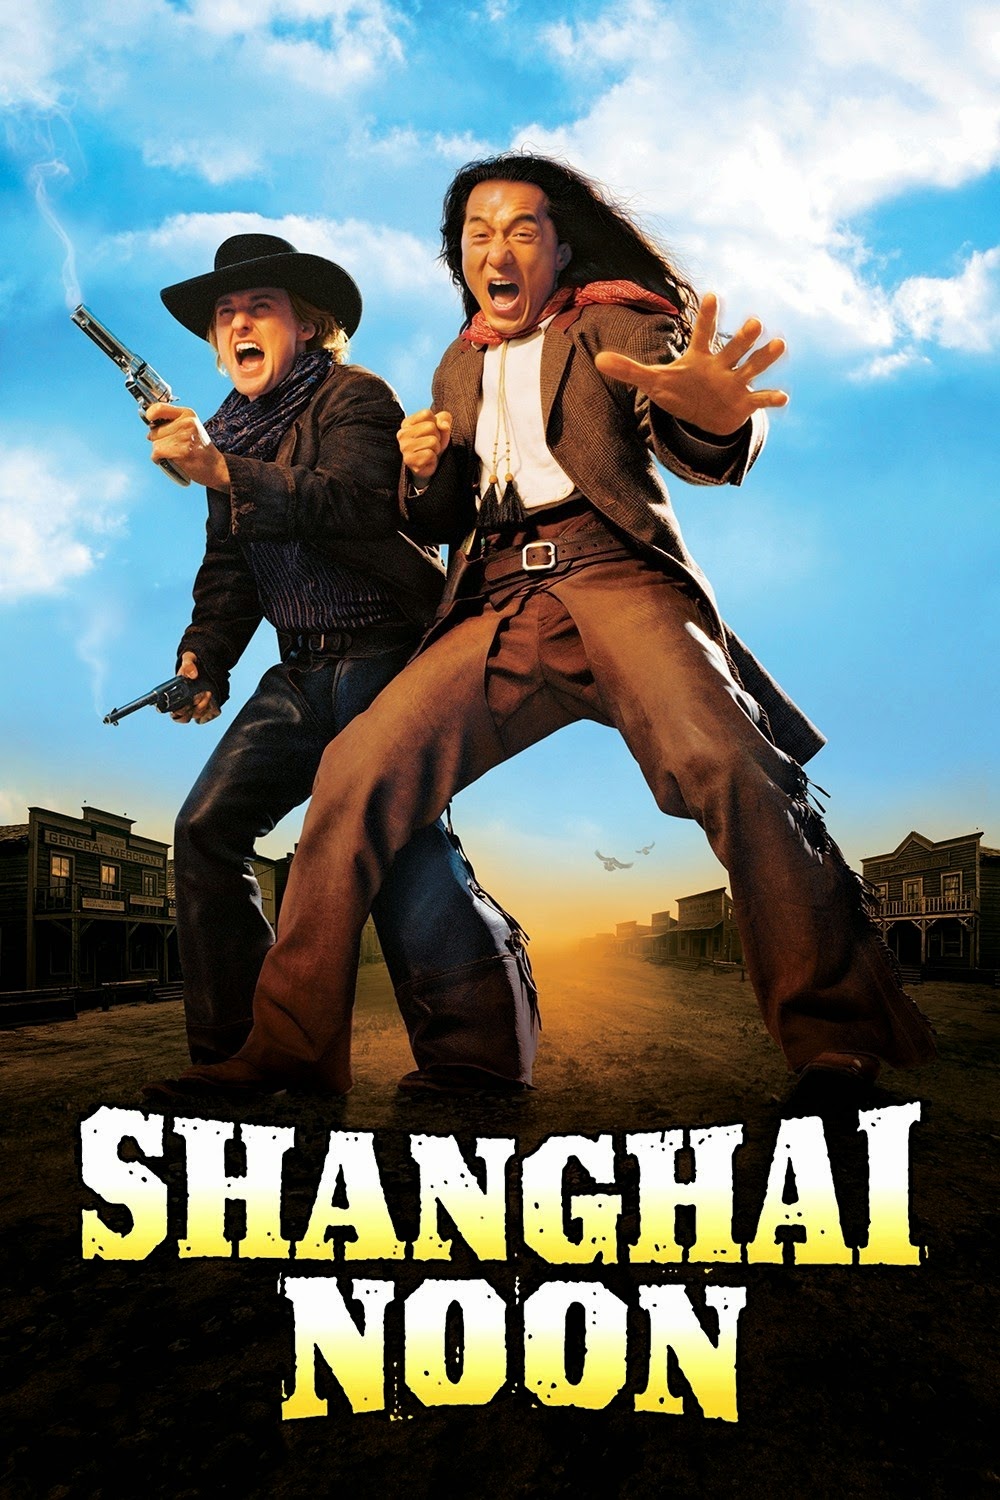 Shanghai Noon (2000) เซียงไฮ นูน คู่ใหญ่ ฟัดข้ามโลก - ดูหนังออนไลน